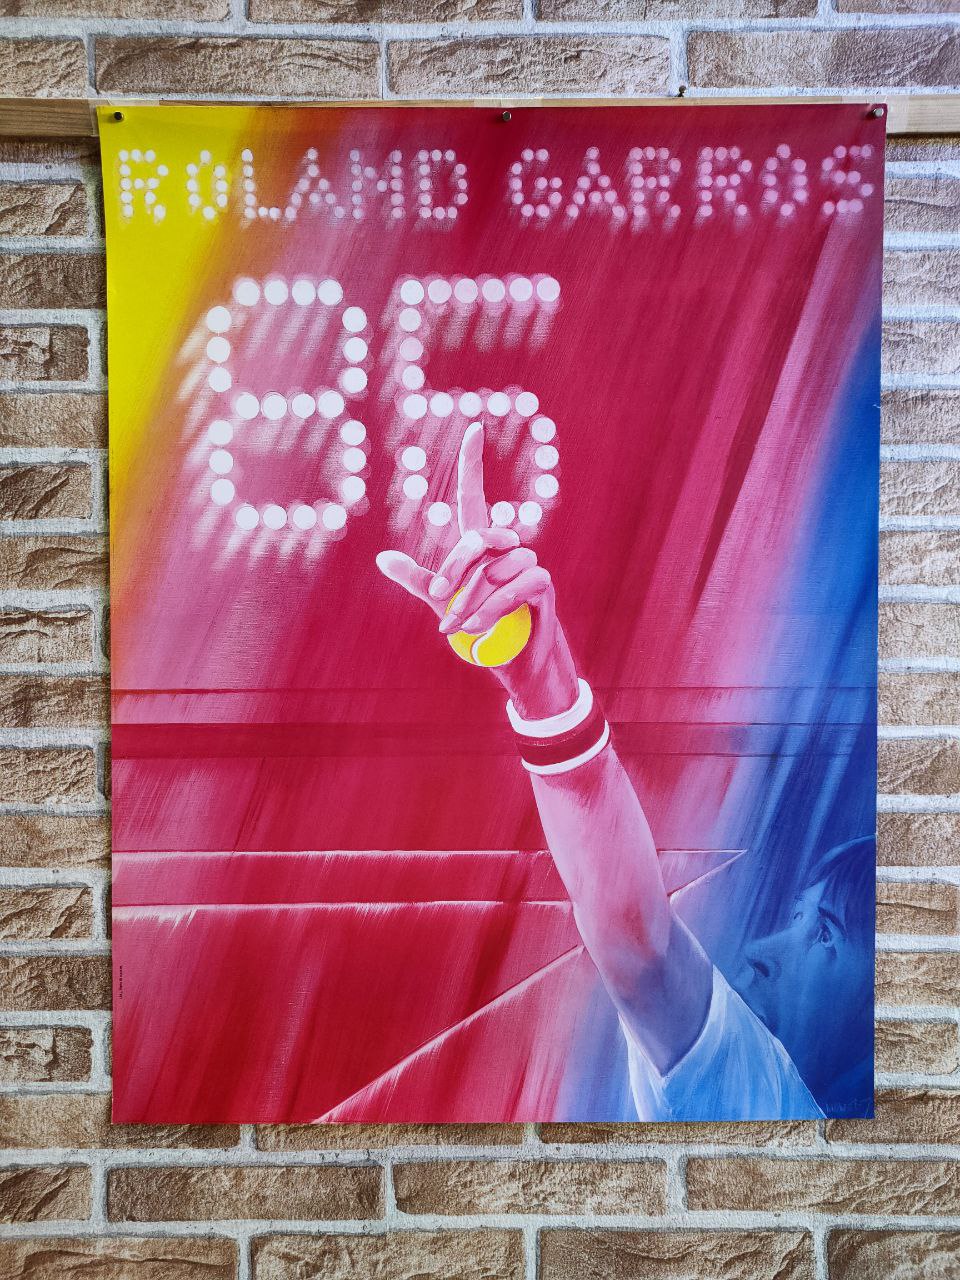 Manifesto originale pubblicitario - Roland Garros 1985